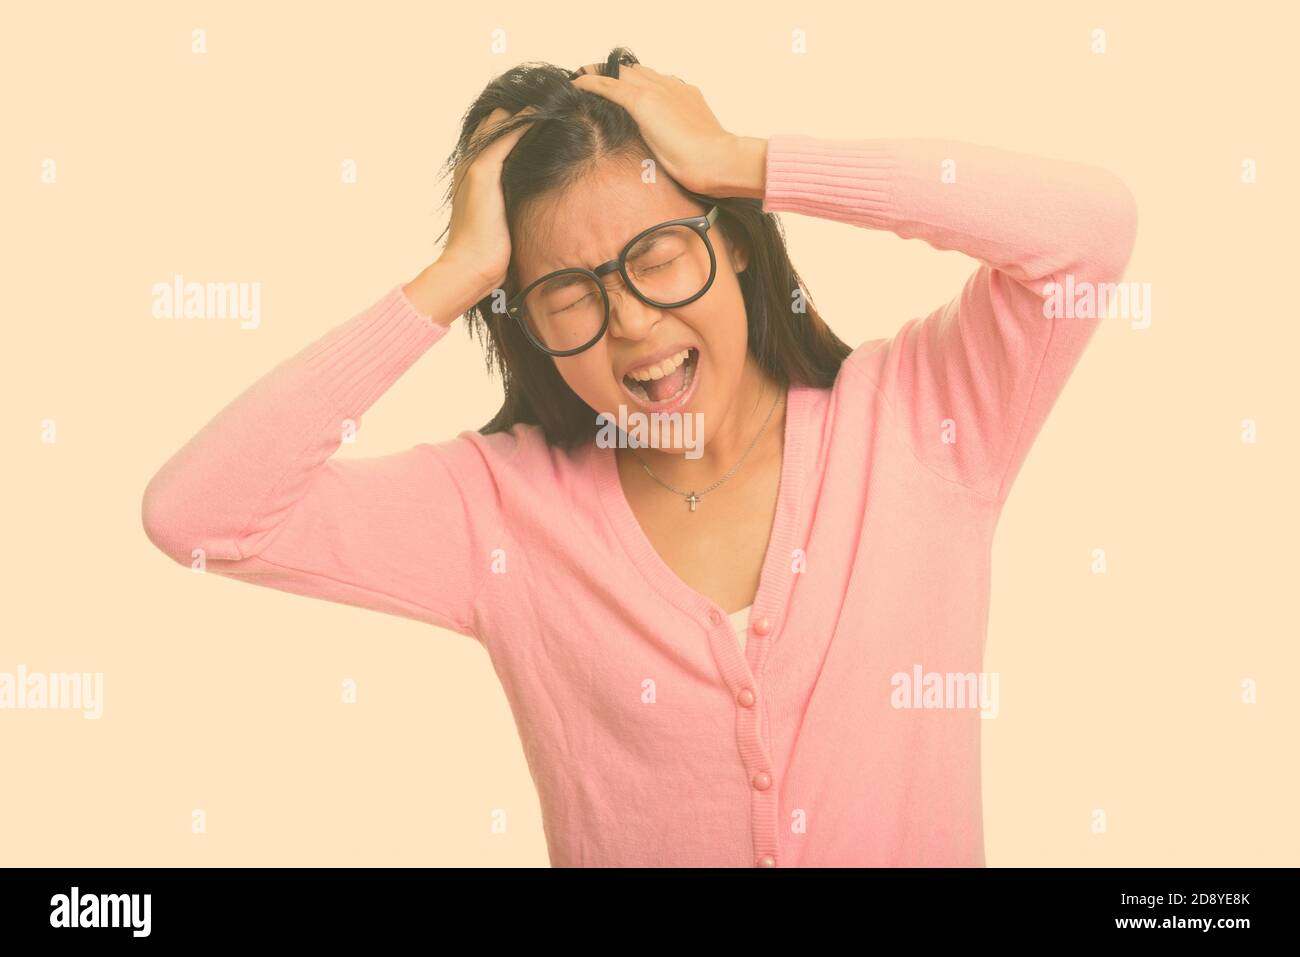 Ritratto di giovane donna nerd asiatica stressata che guarda arrabbiato Foto Stock